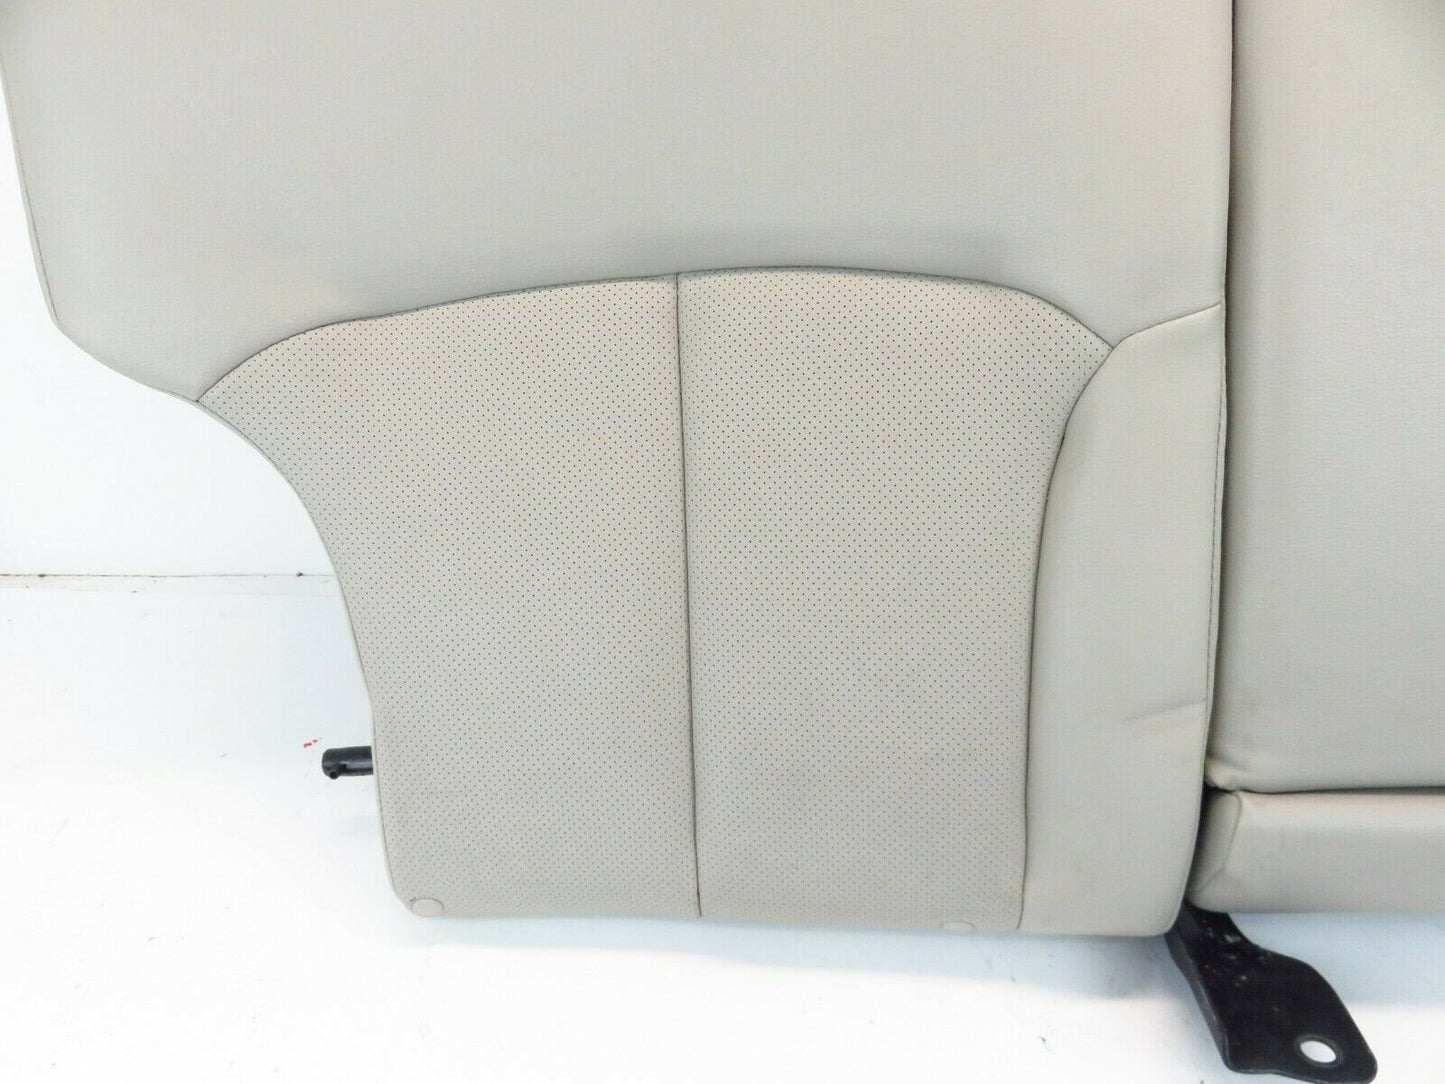 2010 Subaru Legacy Rear Seat Upper Top Cushion Back w/ Armrest Leather RH 10